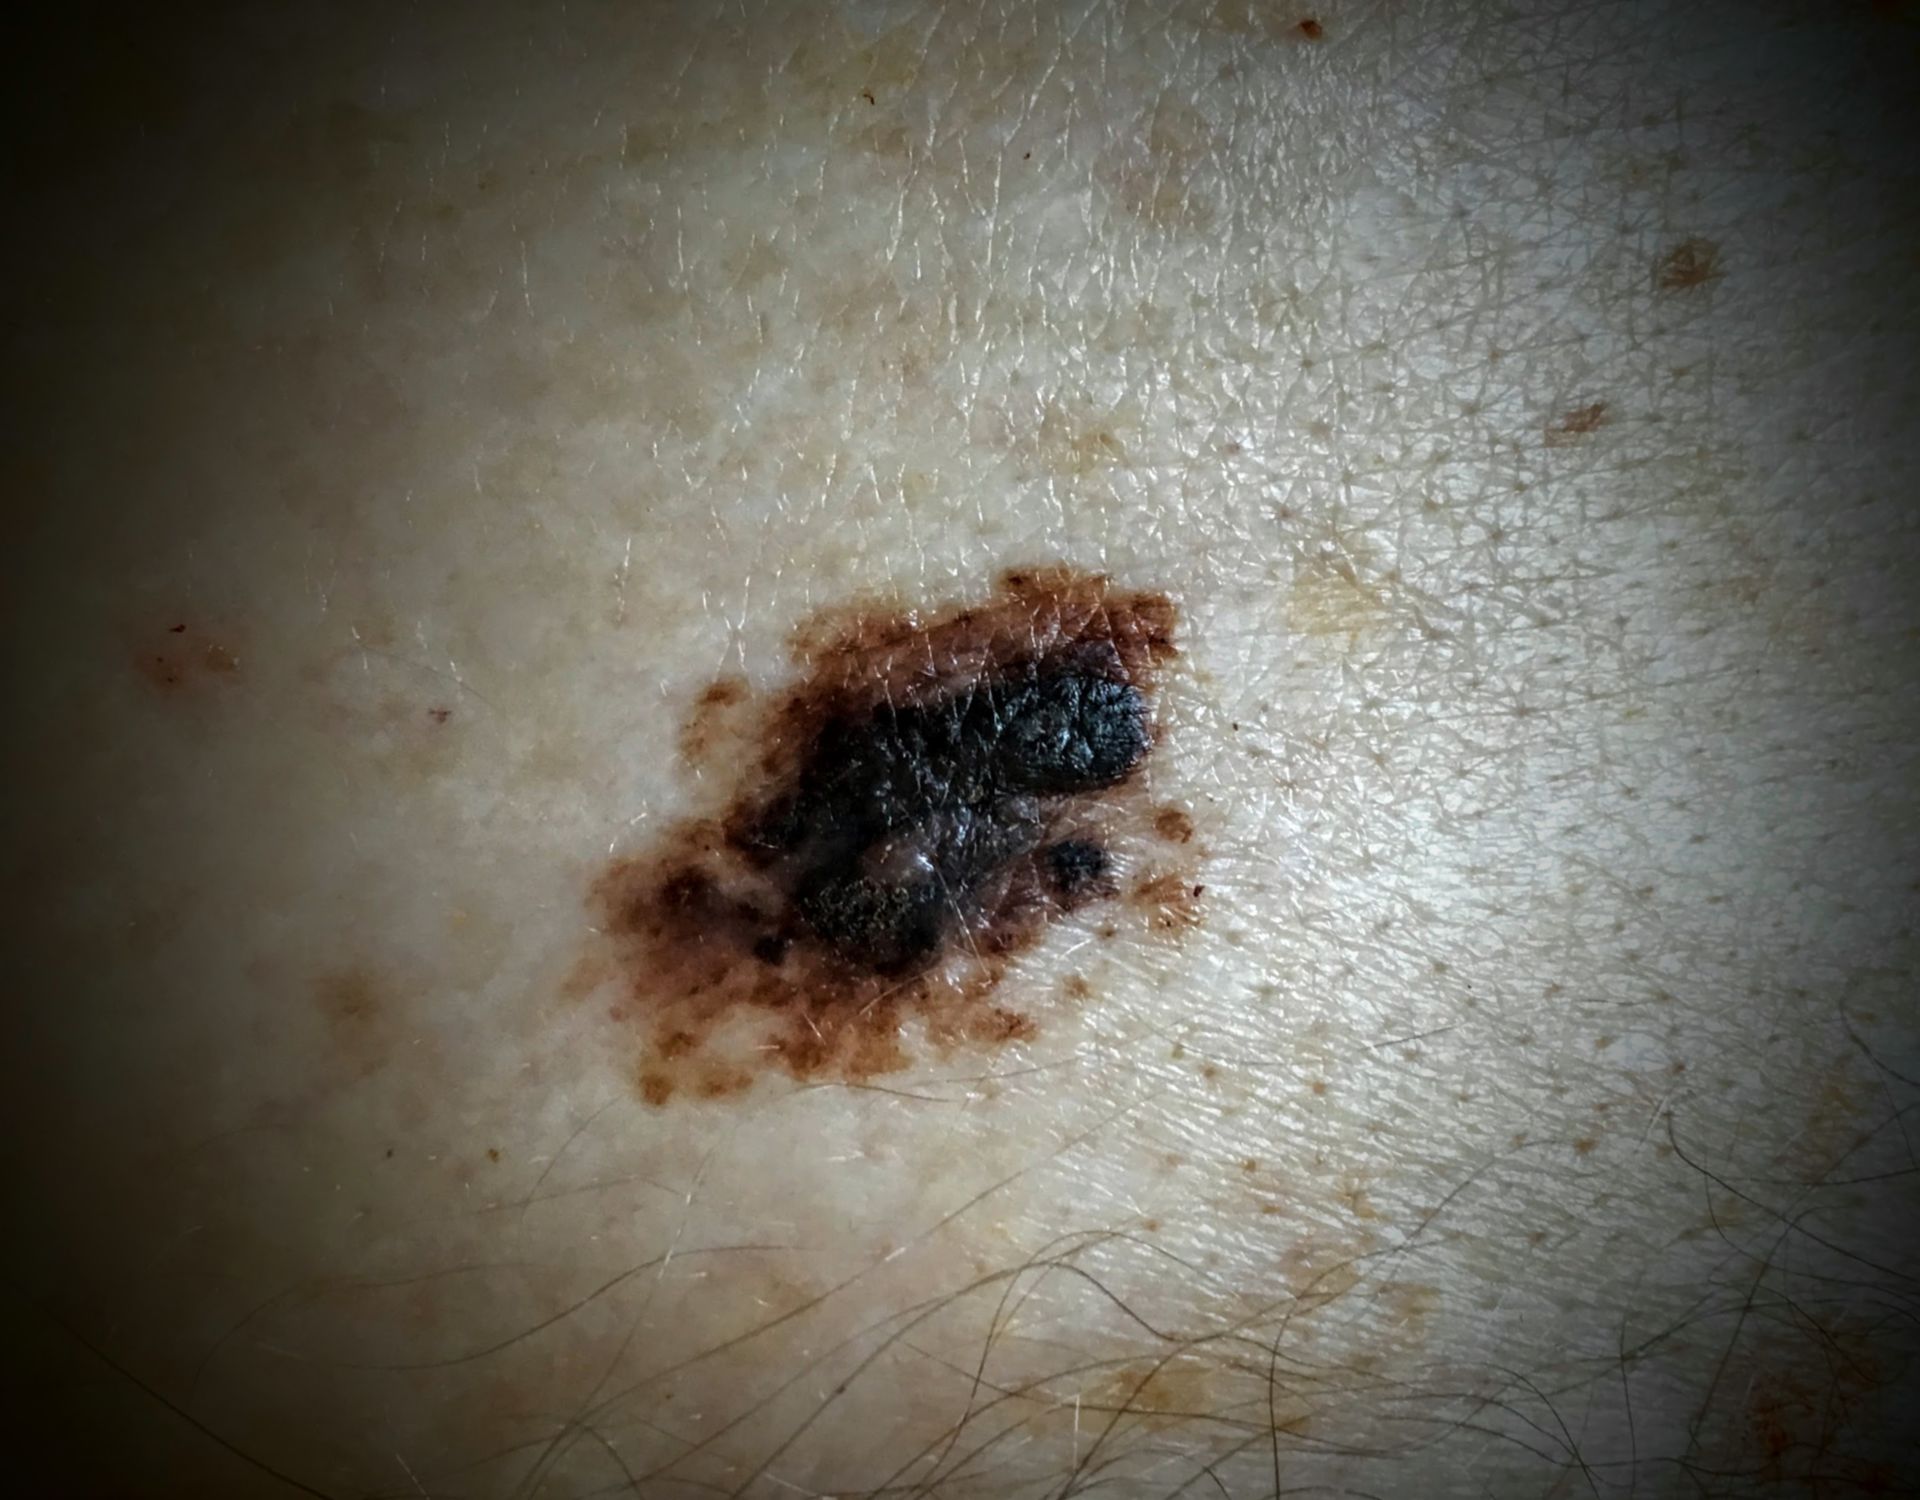 Malign melanoma